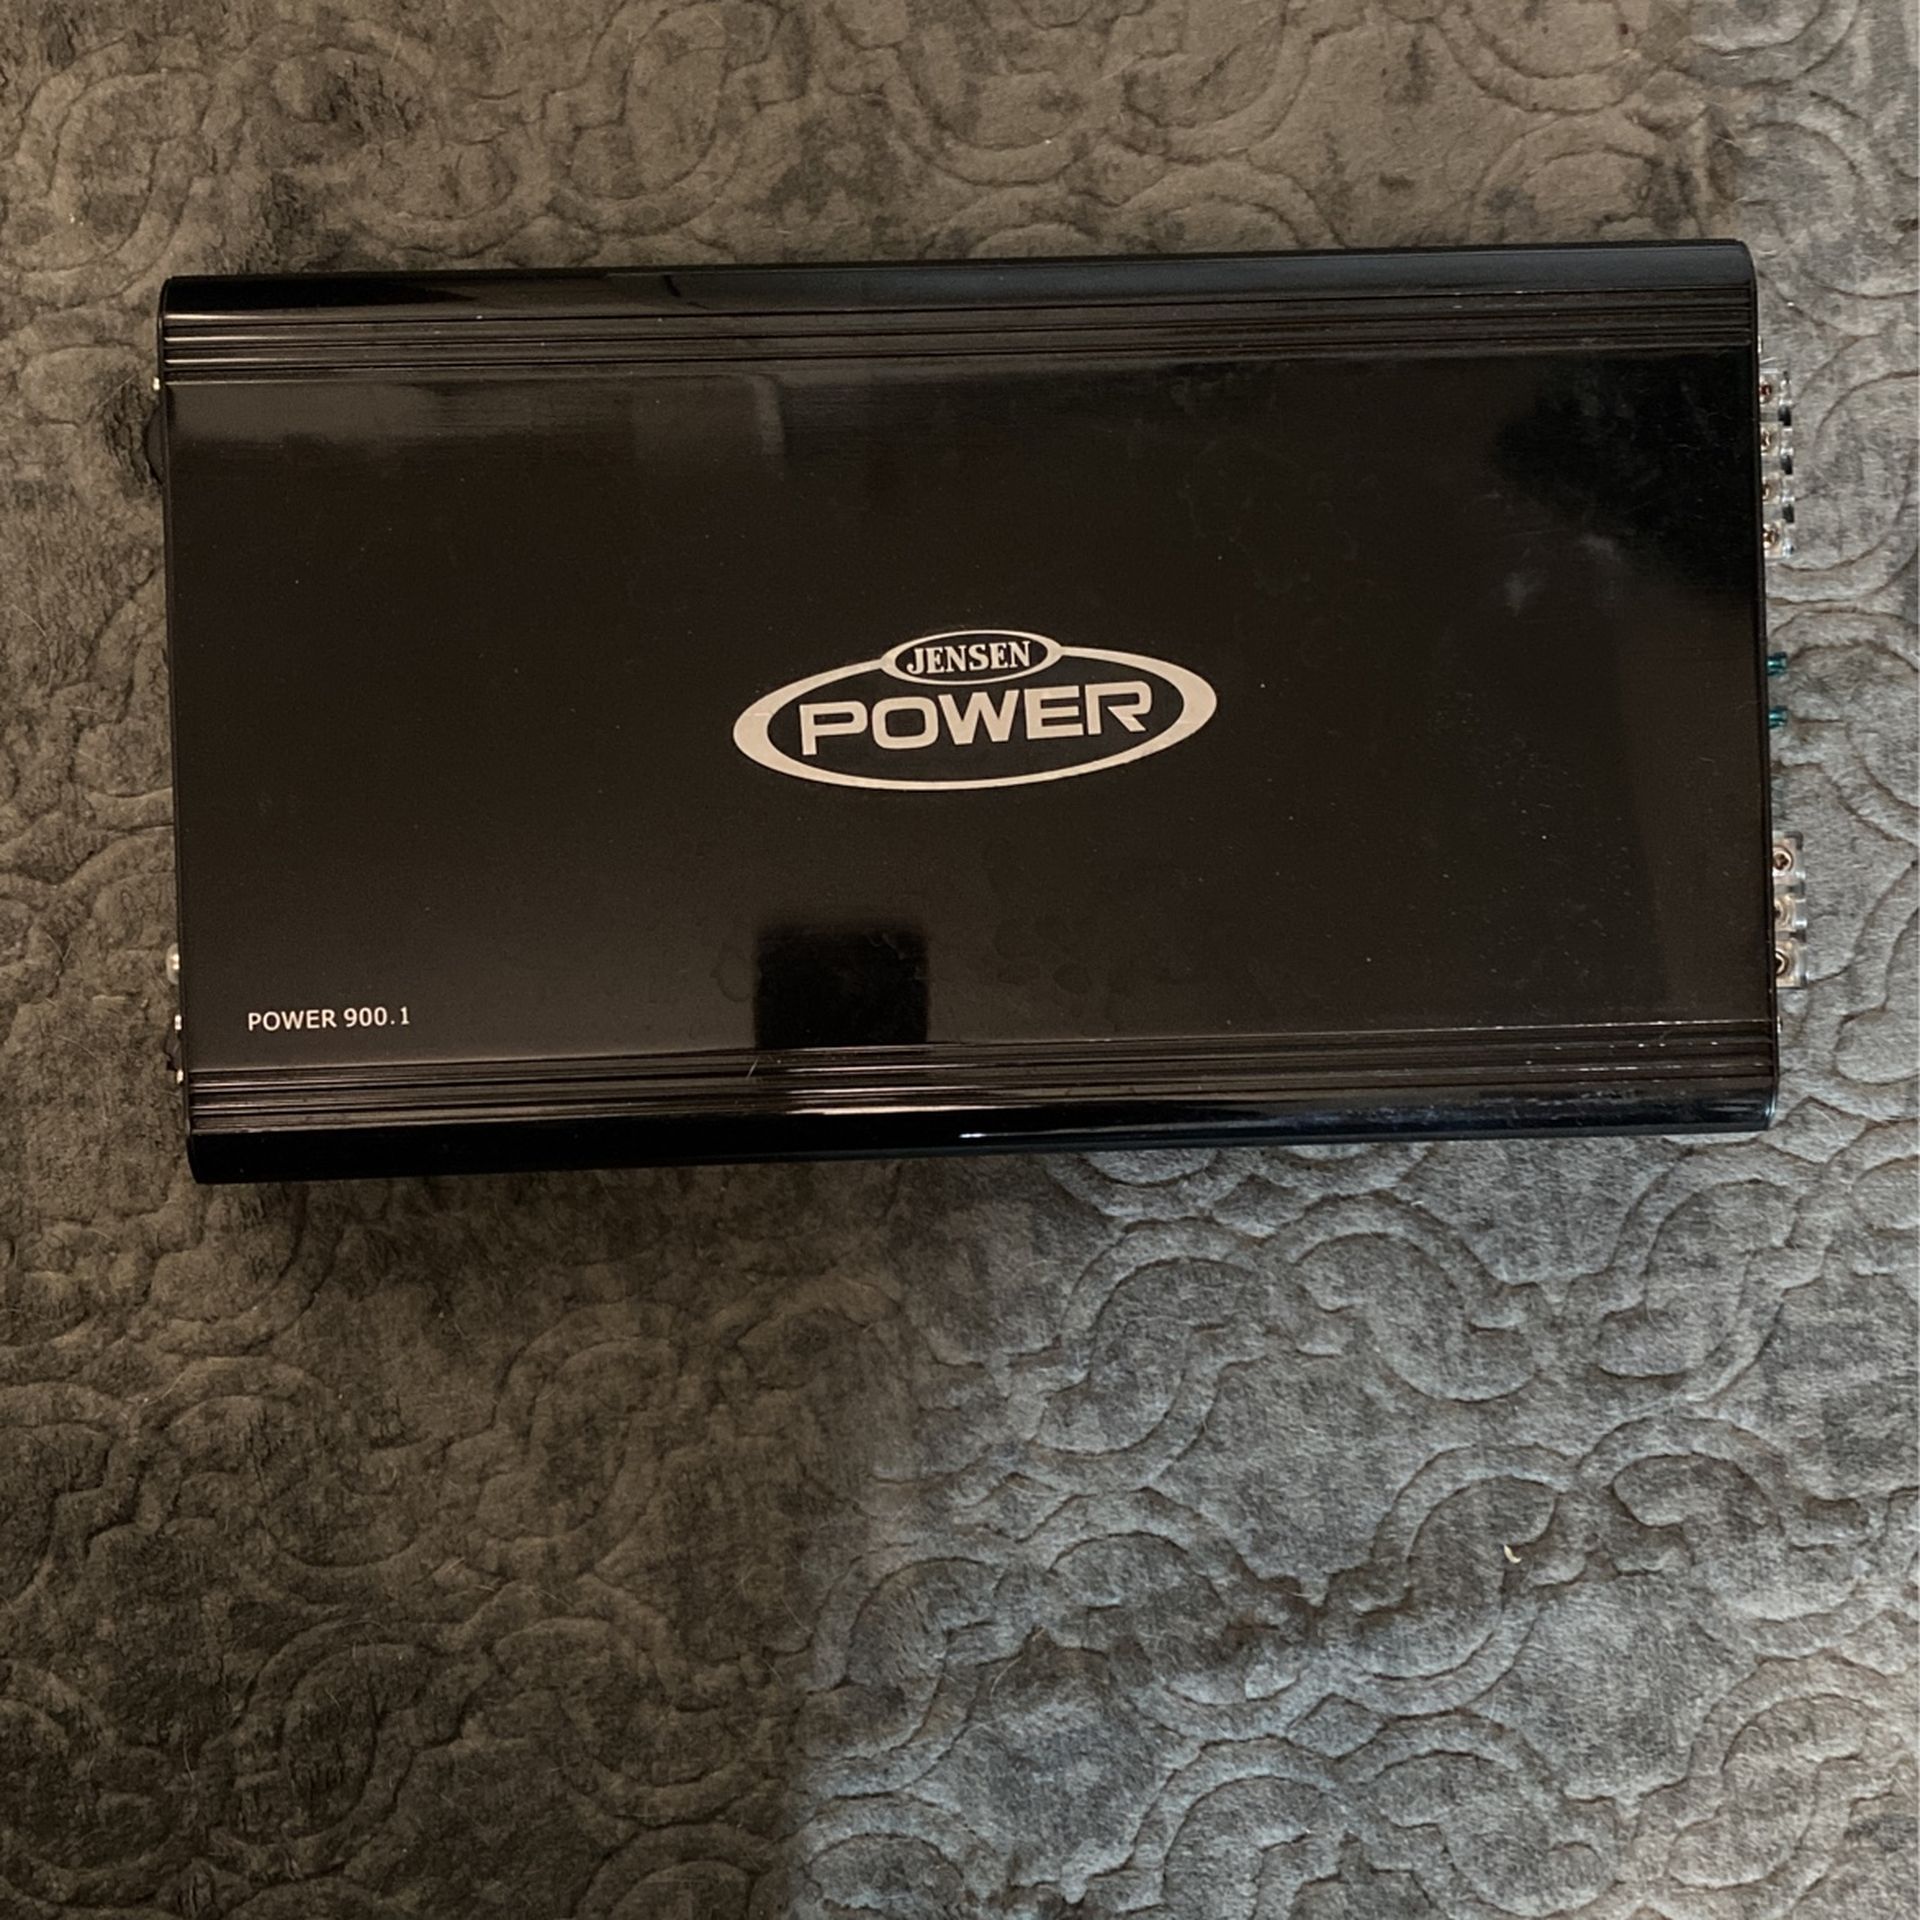 Jensen Power Amplifier